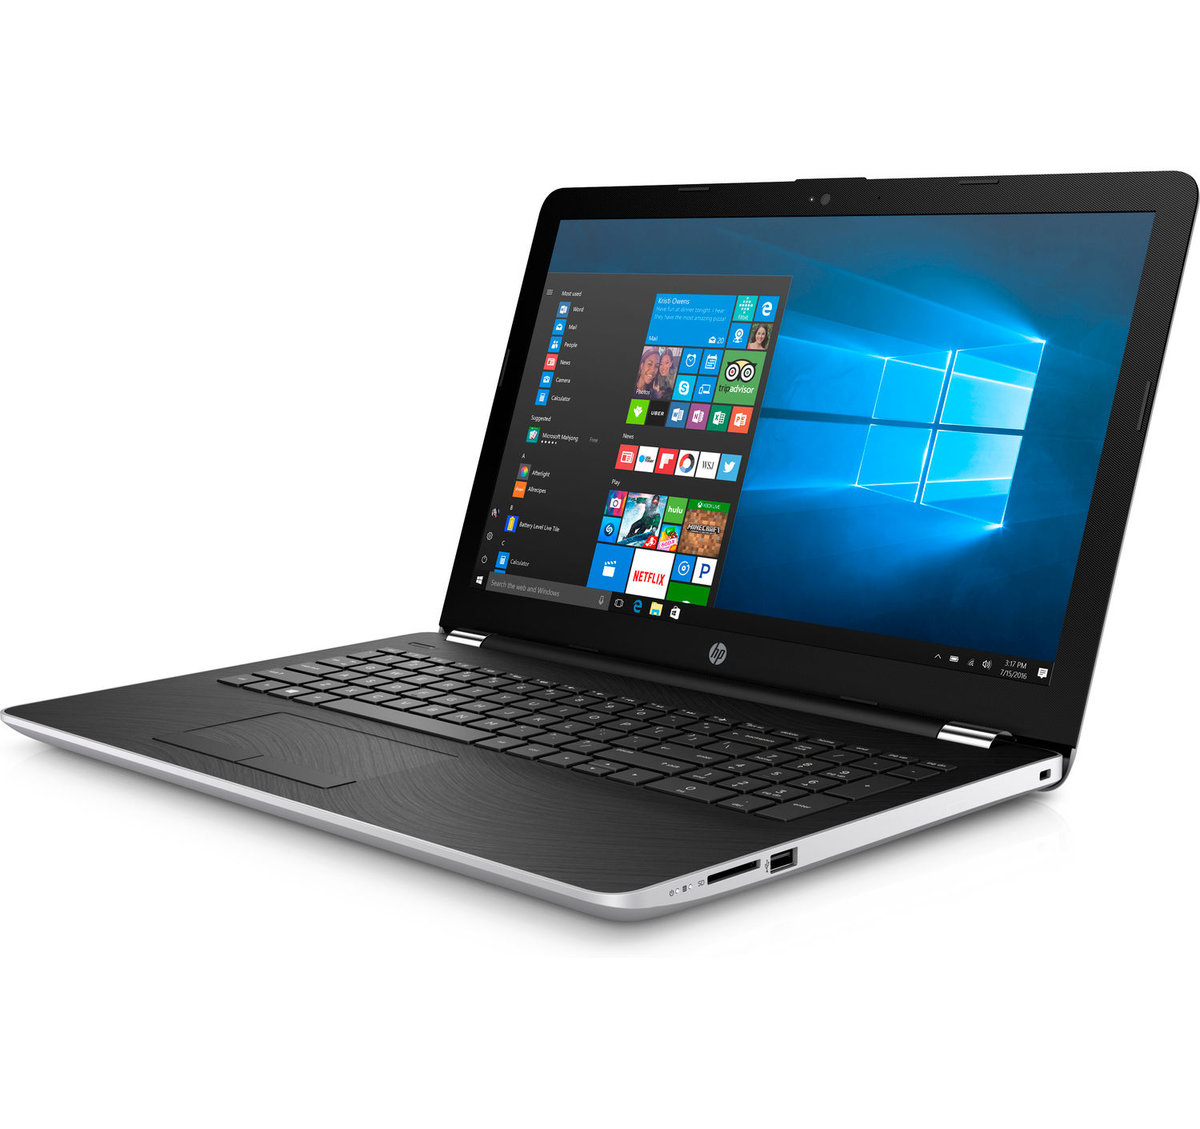 Notebook HP 15-BS031, i3-7100U, 8GB memoria ram, 1TB hard disk, 15"